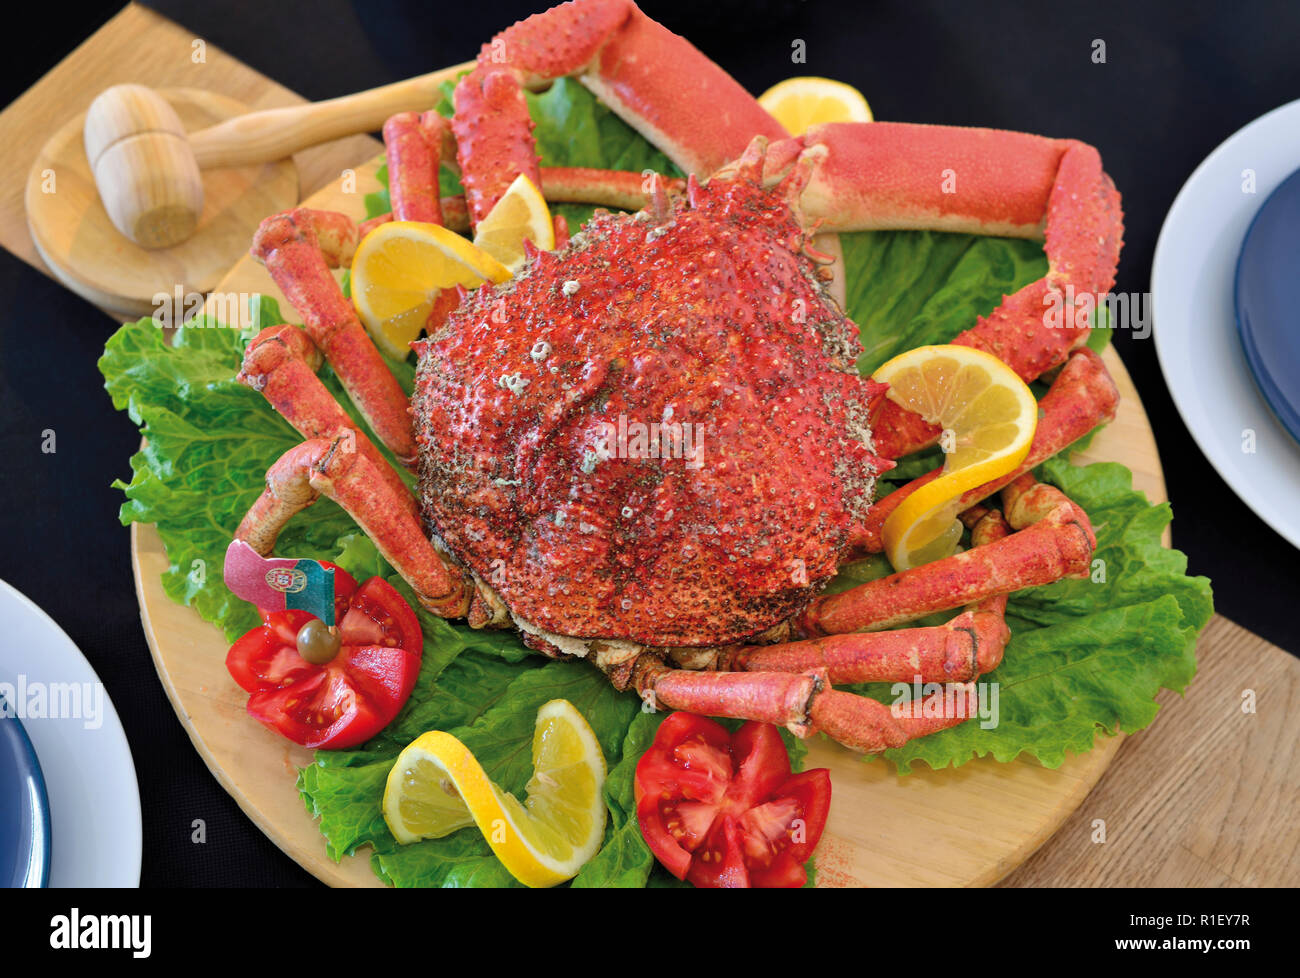 Frisch gekocht Seespinne auf einer Holzplatte mit Salat, Tomaten und zitronenscheiben eingerichtet Stockfoto